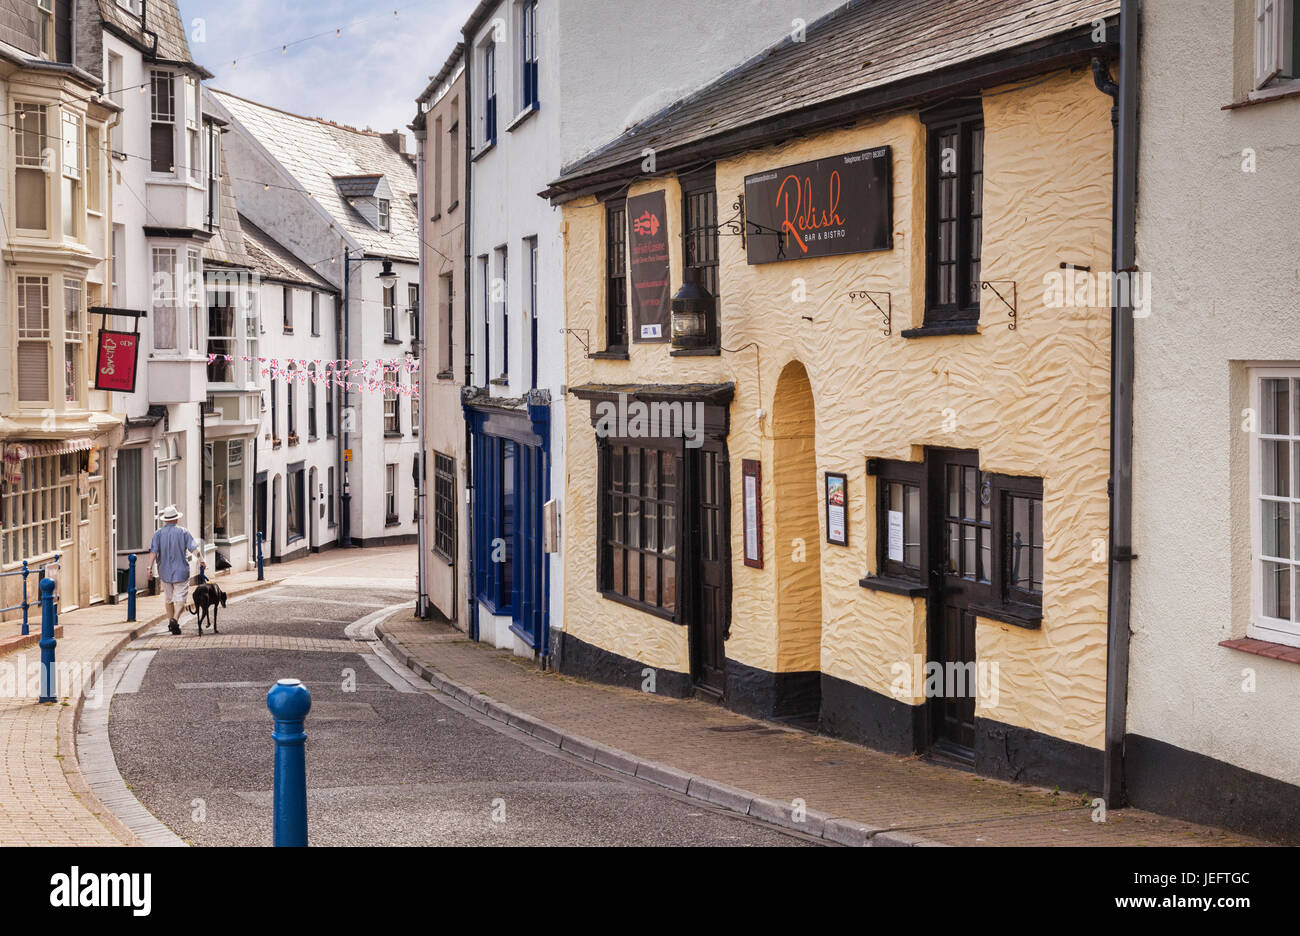 14 Juin 2017 : Ilfracombe, Devon, England, UK - Un homme se promène avec son bas Greyhound Fore Street, anciennement la rue la plus importante de la ville. Banque D'Images